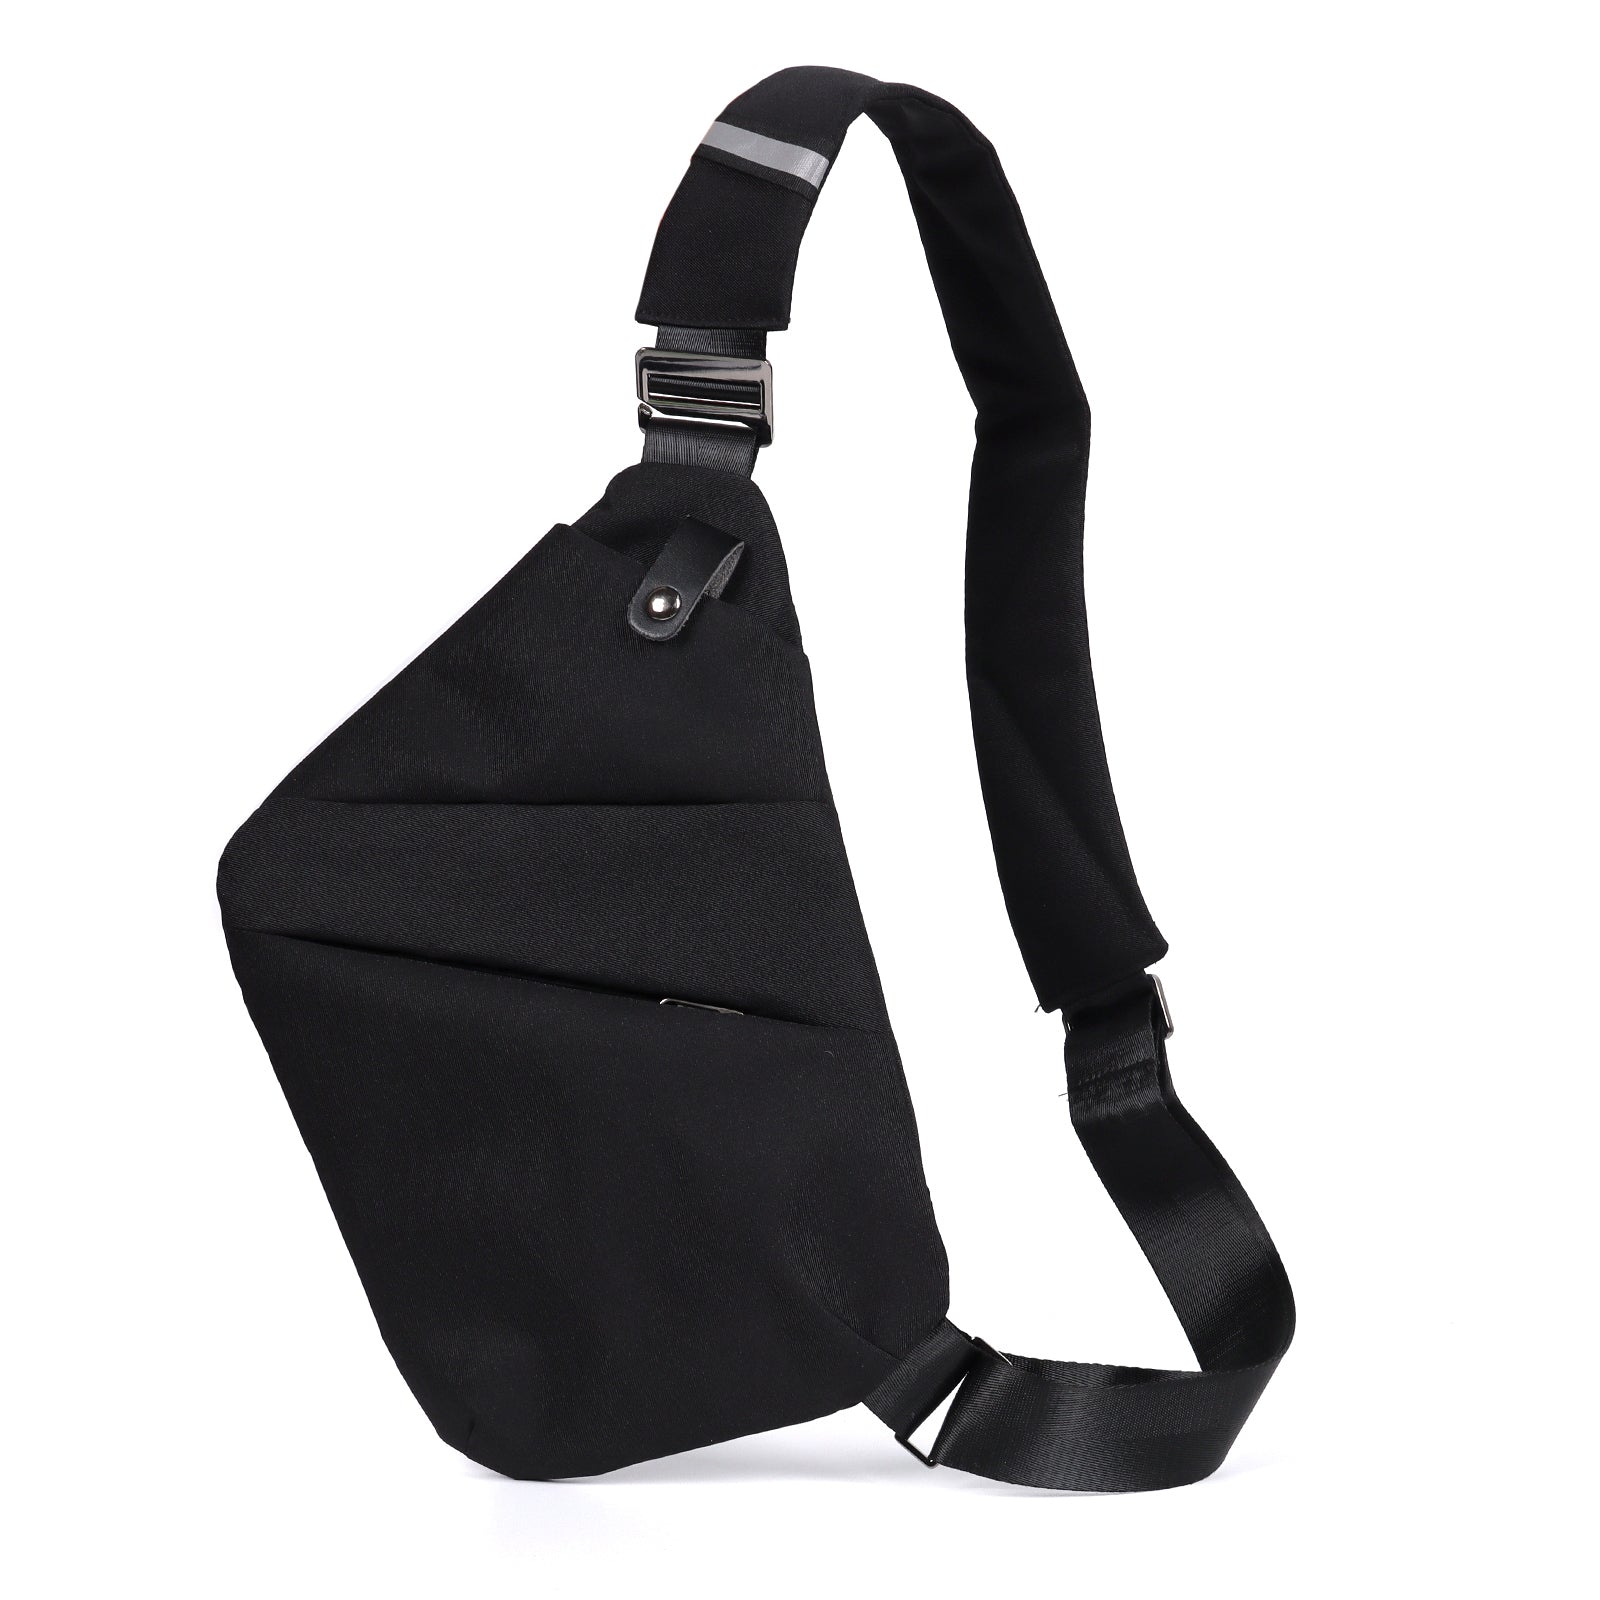 TAN.TOMI Diese minimalistische Brusttasche für Herren eignet sich perfekt für tägliche Radtouren, Einkäufe, Arbeits- und Schulausflüge